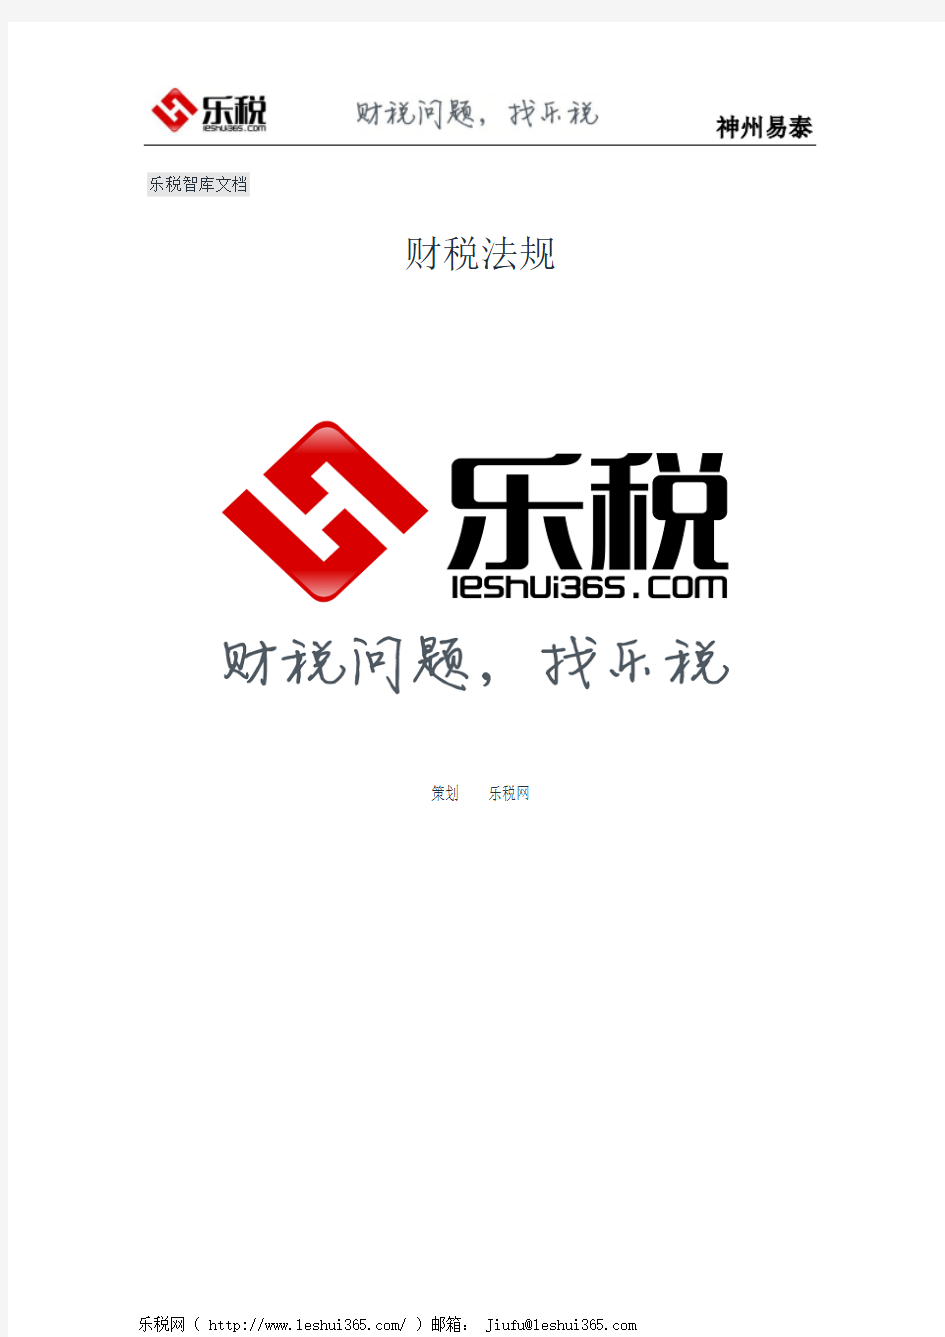 重庆市国家税务局转发国家税务总局关于增值税专用发票和其他抵扣